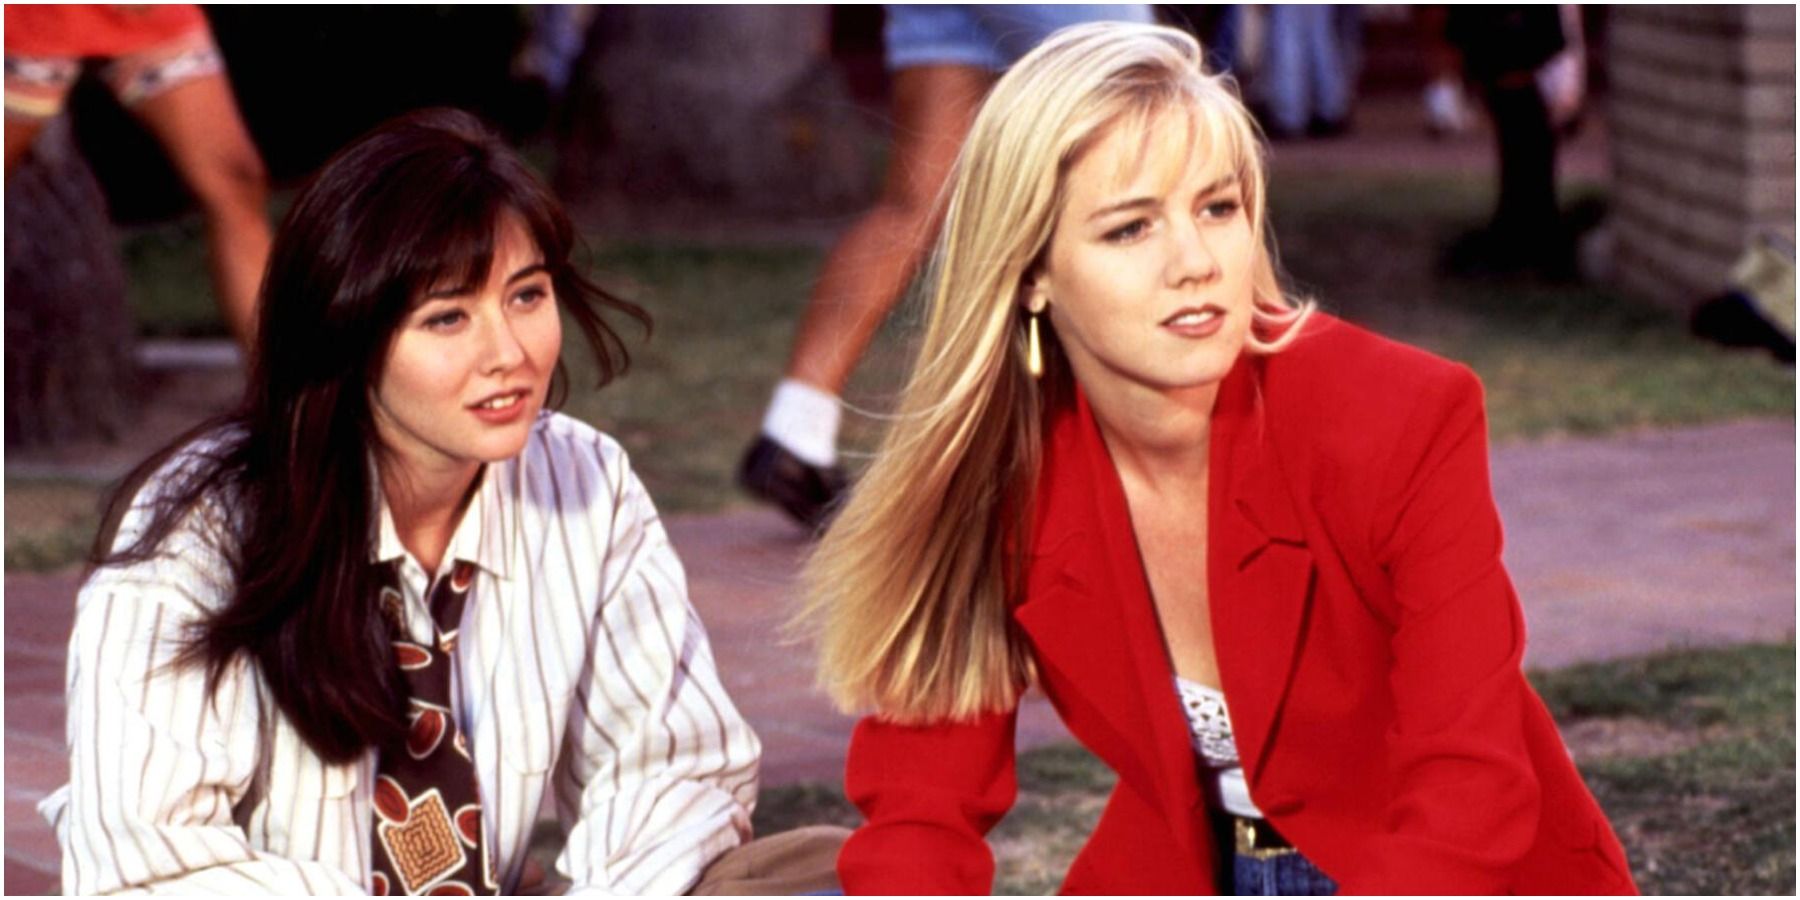 Her Jealousy Towards Kelly-90210 Kelly and Brenda